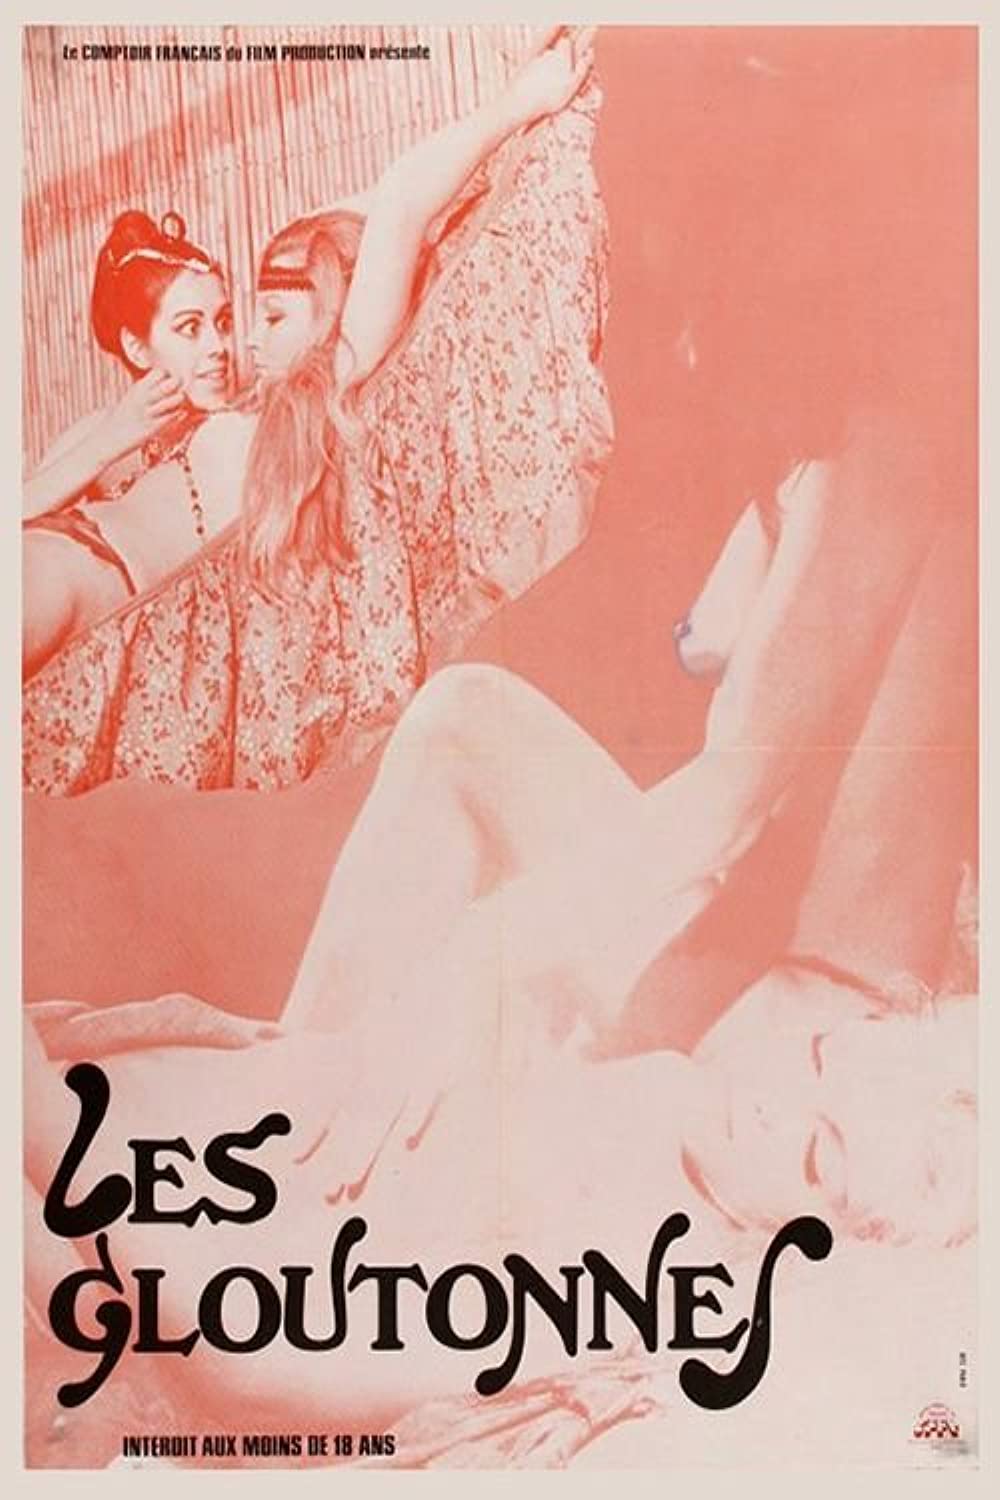 Les Gloutonnes (1975) - Original Poster - vintagepornfun.com